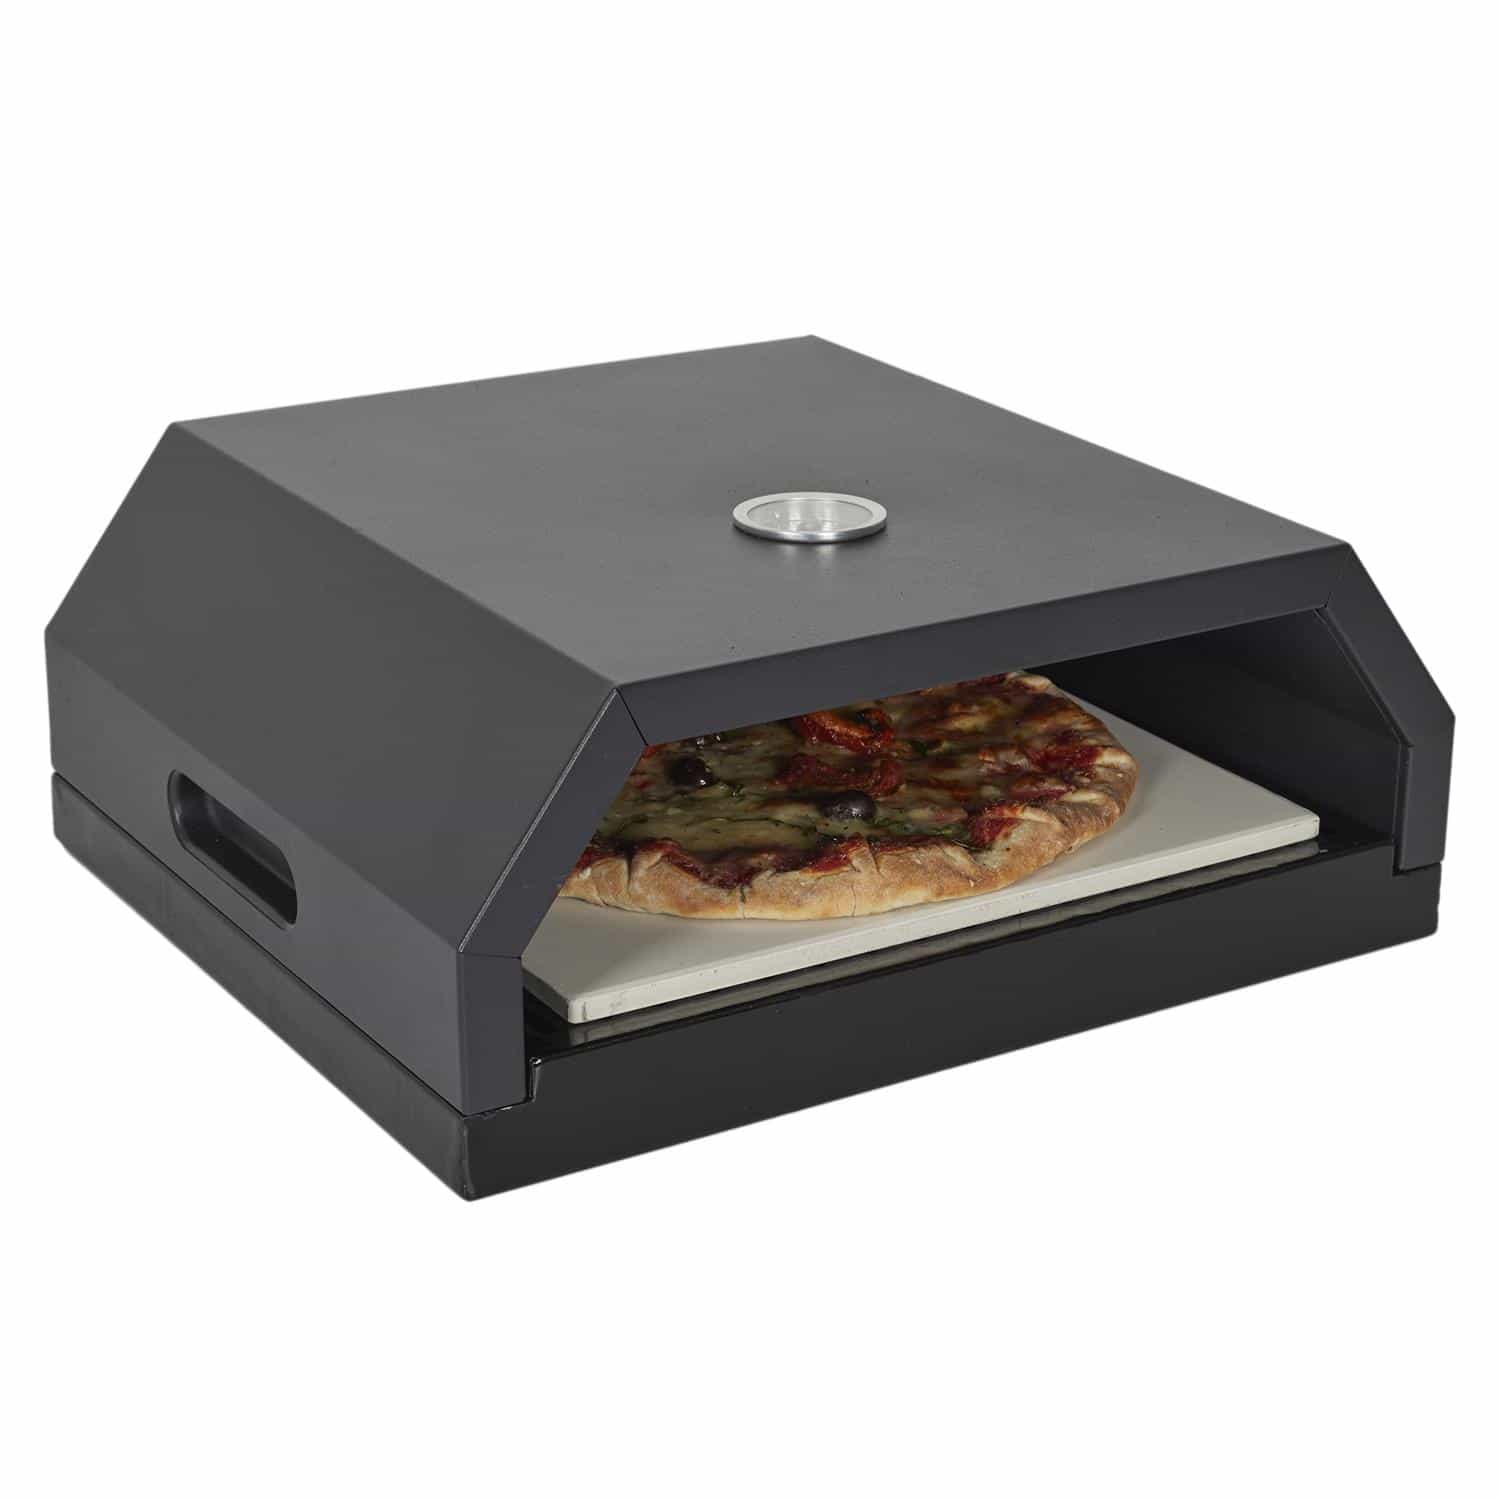 4goodz Pizzaoven voor BBQ - Gas/Kolen 35x40x16 cm - Zwart